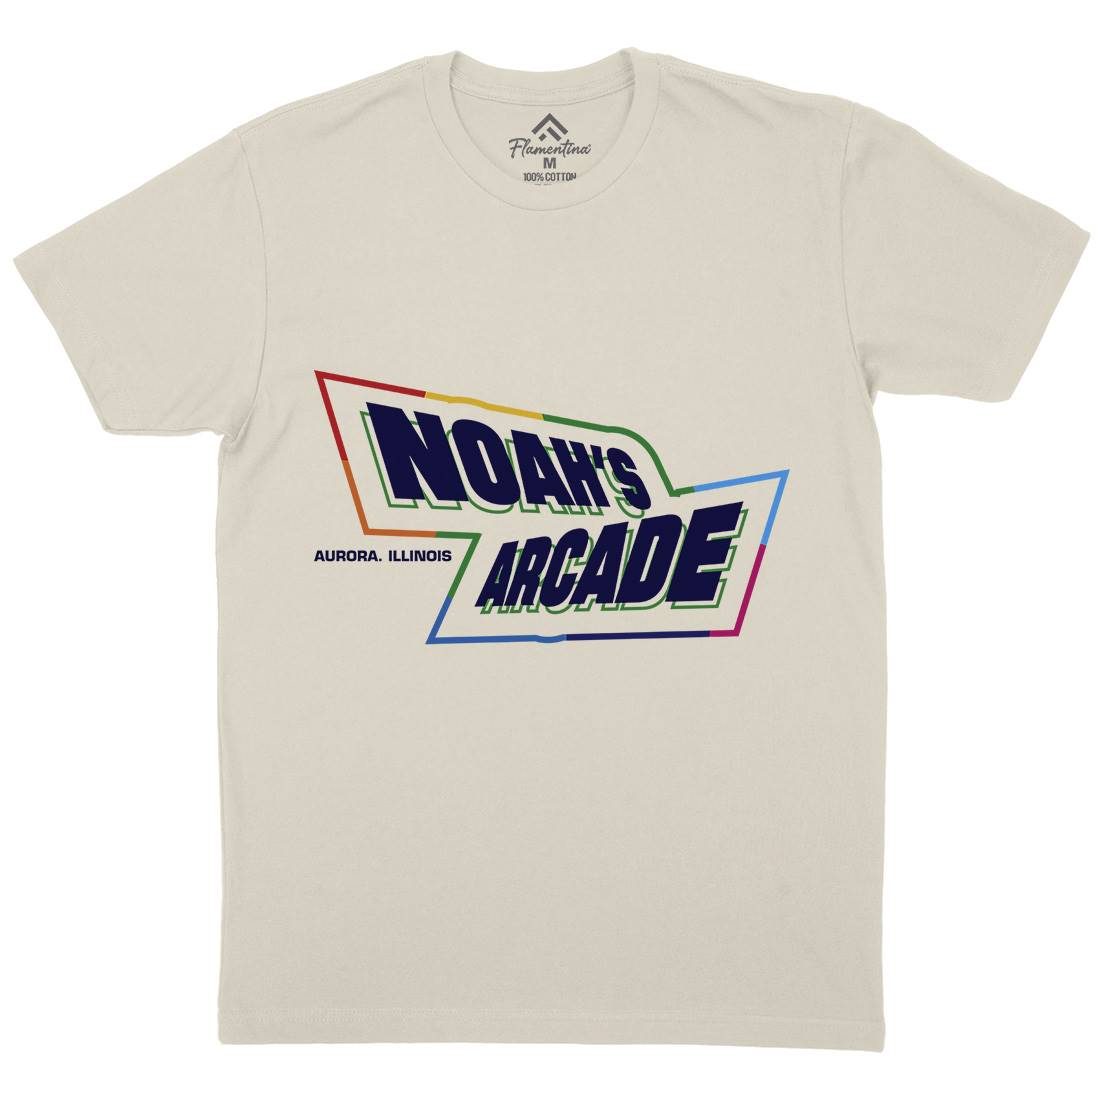 Noahs Arcade Mens Organic Crew Neck T-Shirt Retro D298